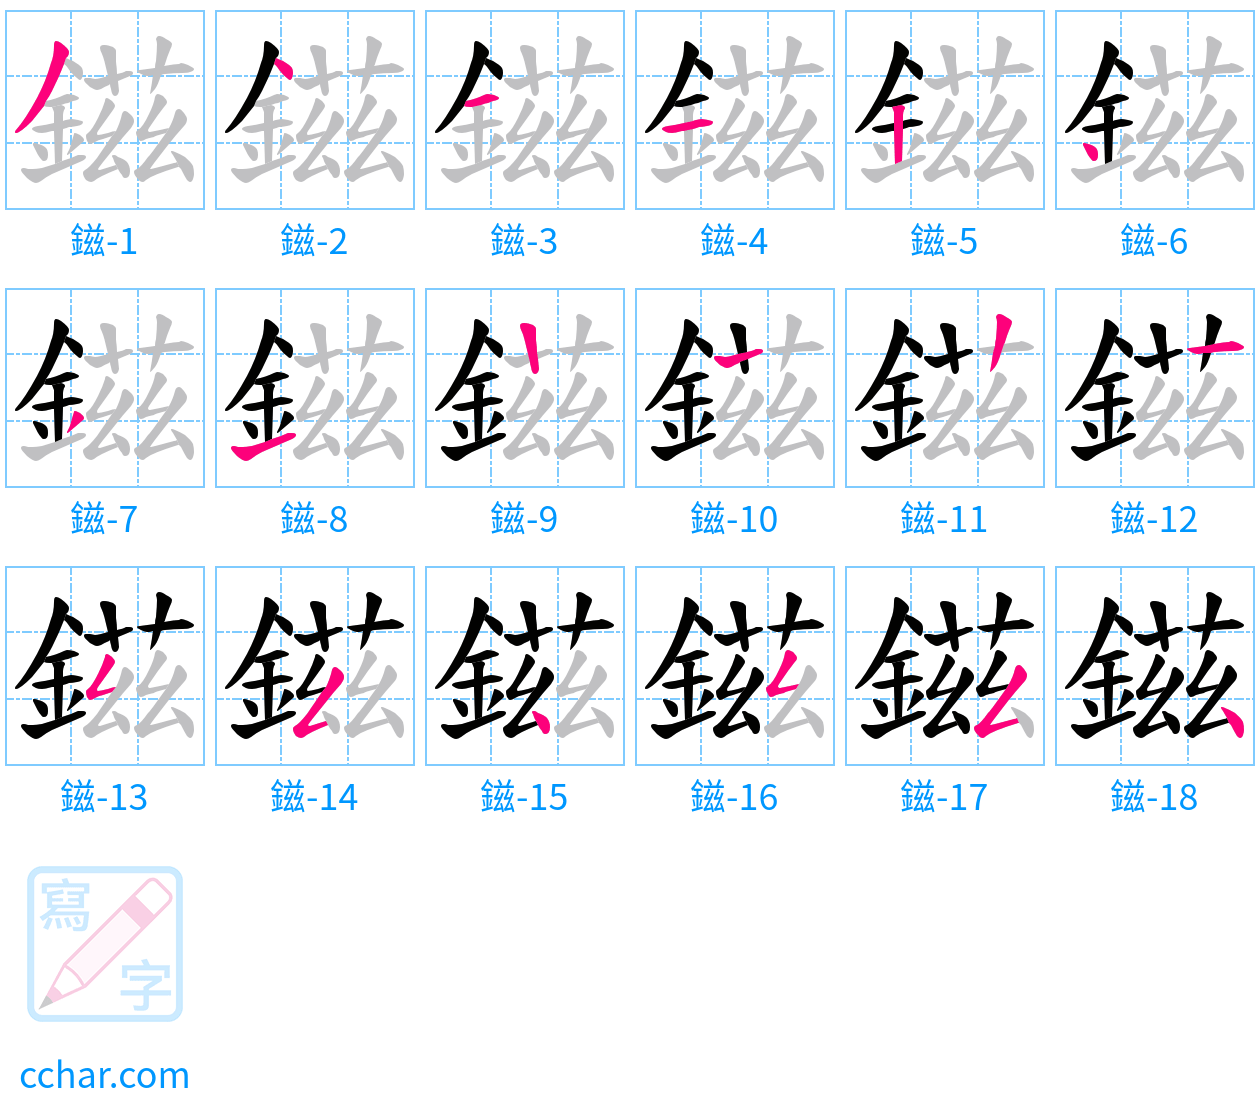 鎡 stroke order step-by-step diagram